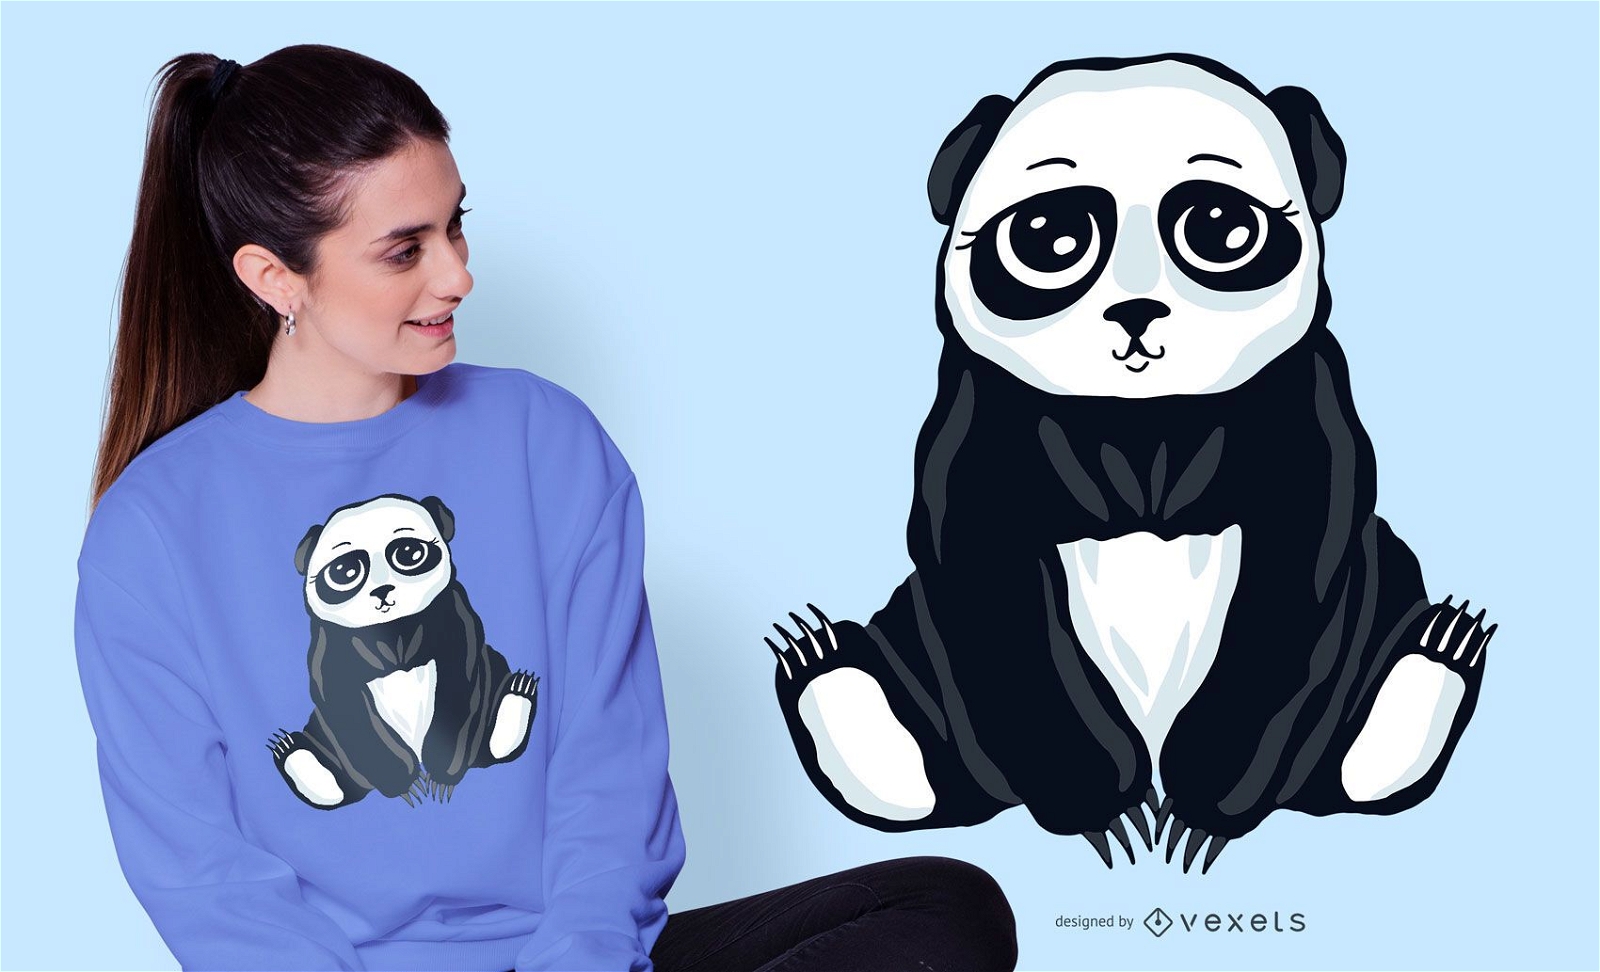 Cute panda bear t-shirt design